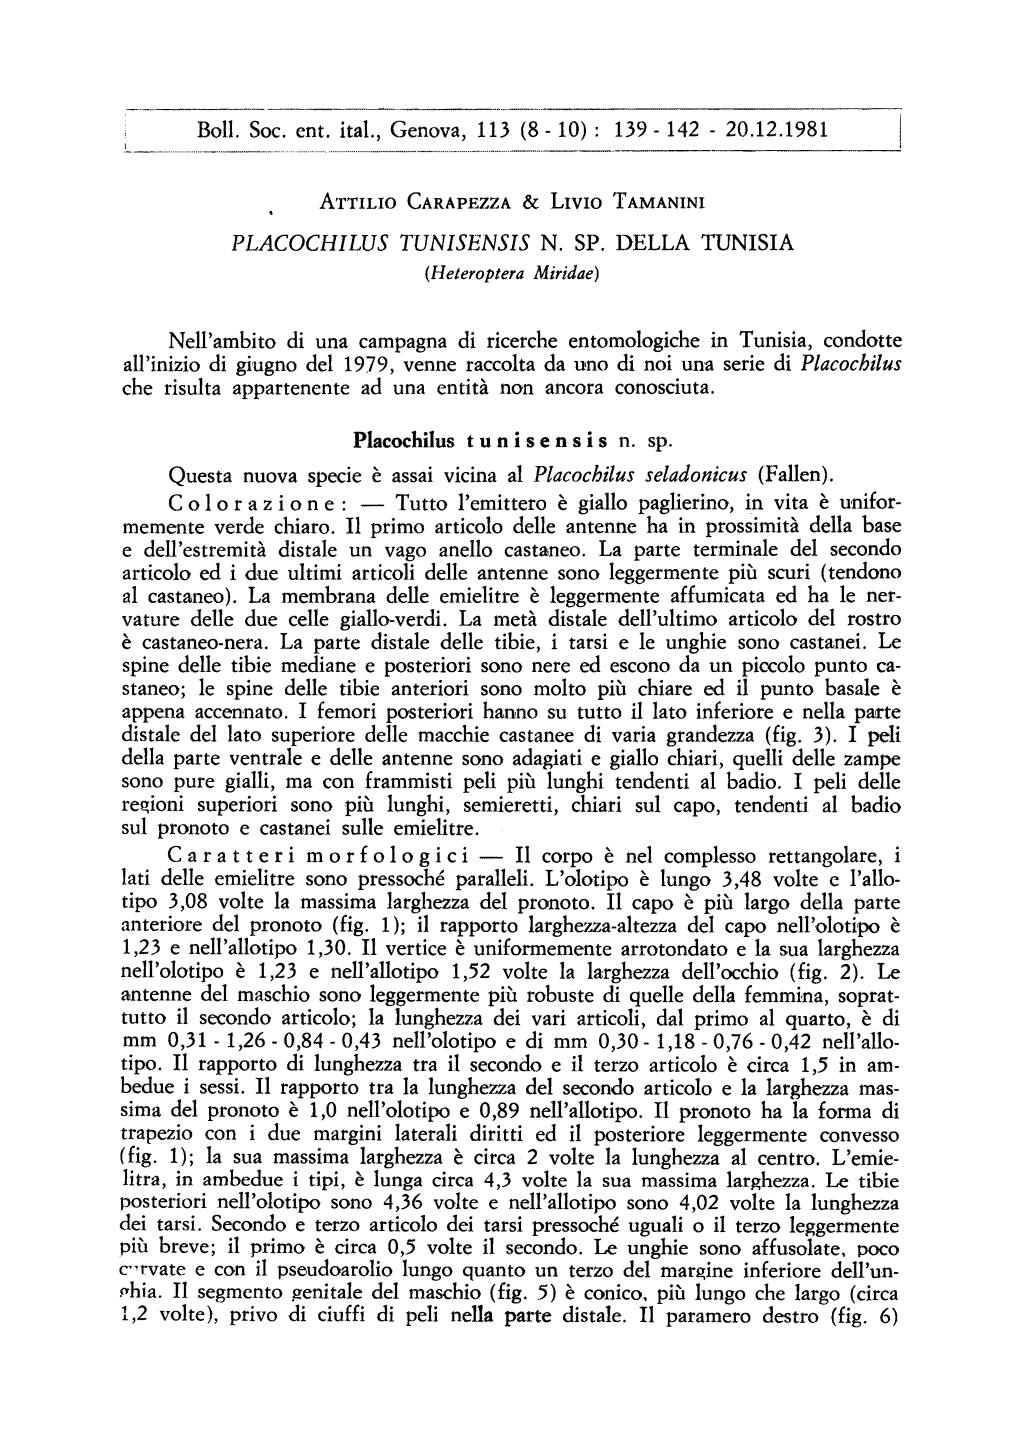 20.12.1981 Ohia. II Segmento Genitale Del Maschio (Fig. 5)